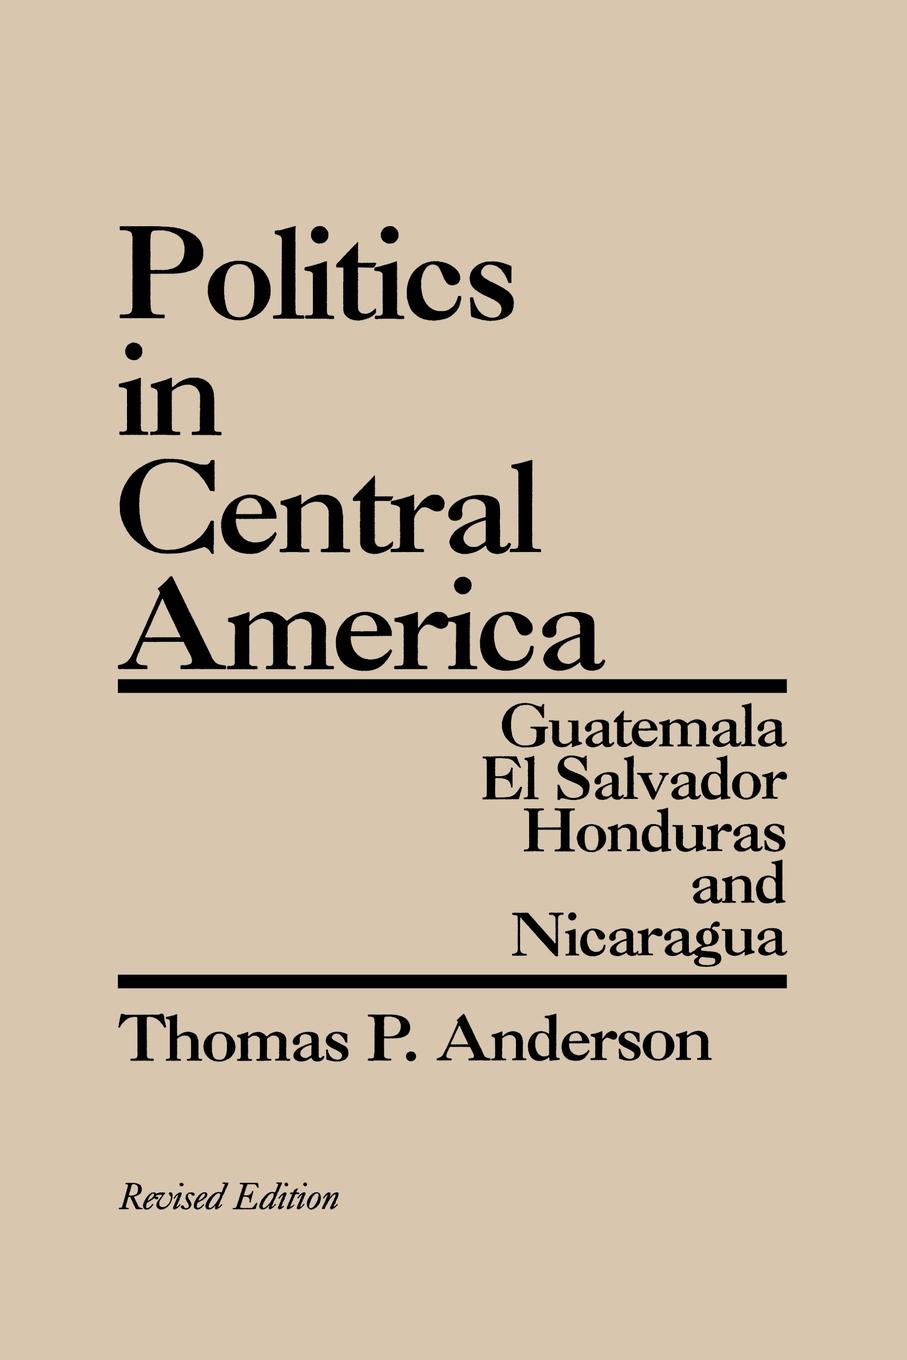 Politics in Central America. Guatemala, El Salvador, Honduras, and Nicaragua; Revised Edition